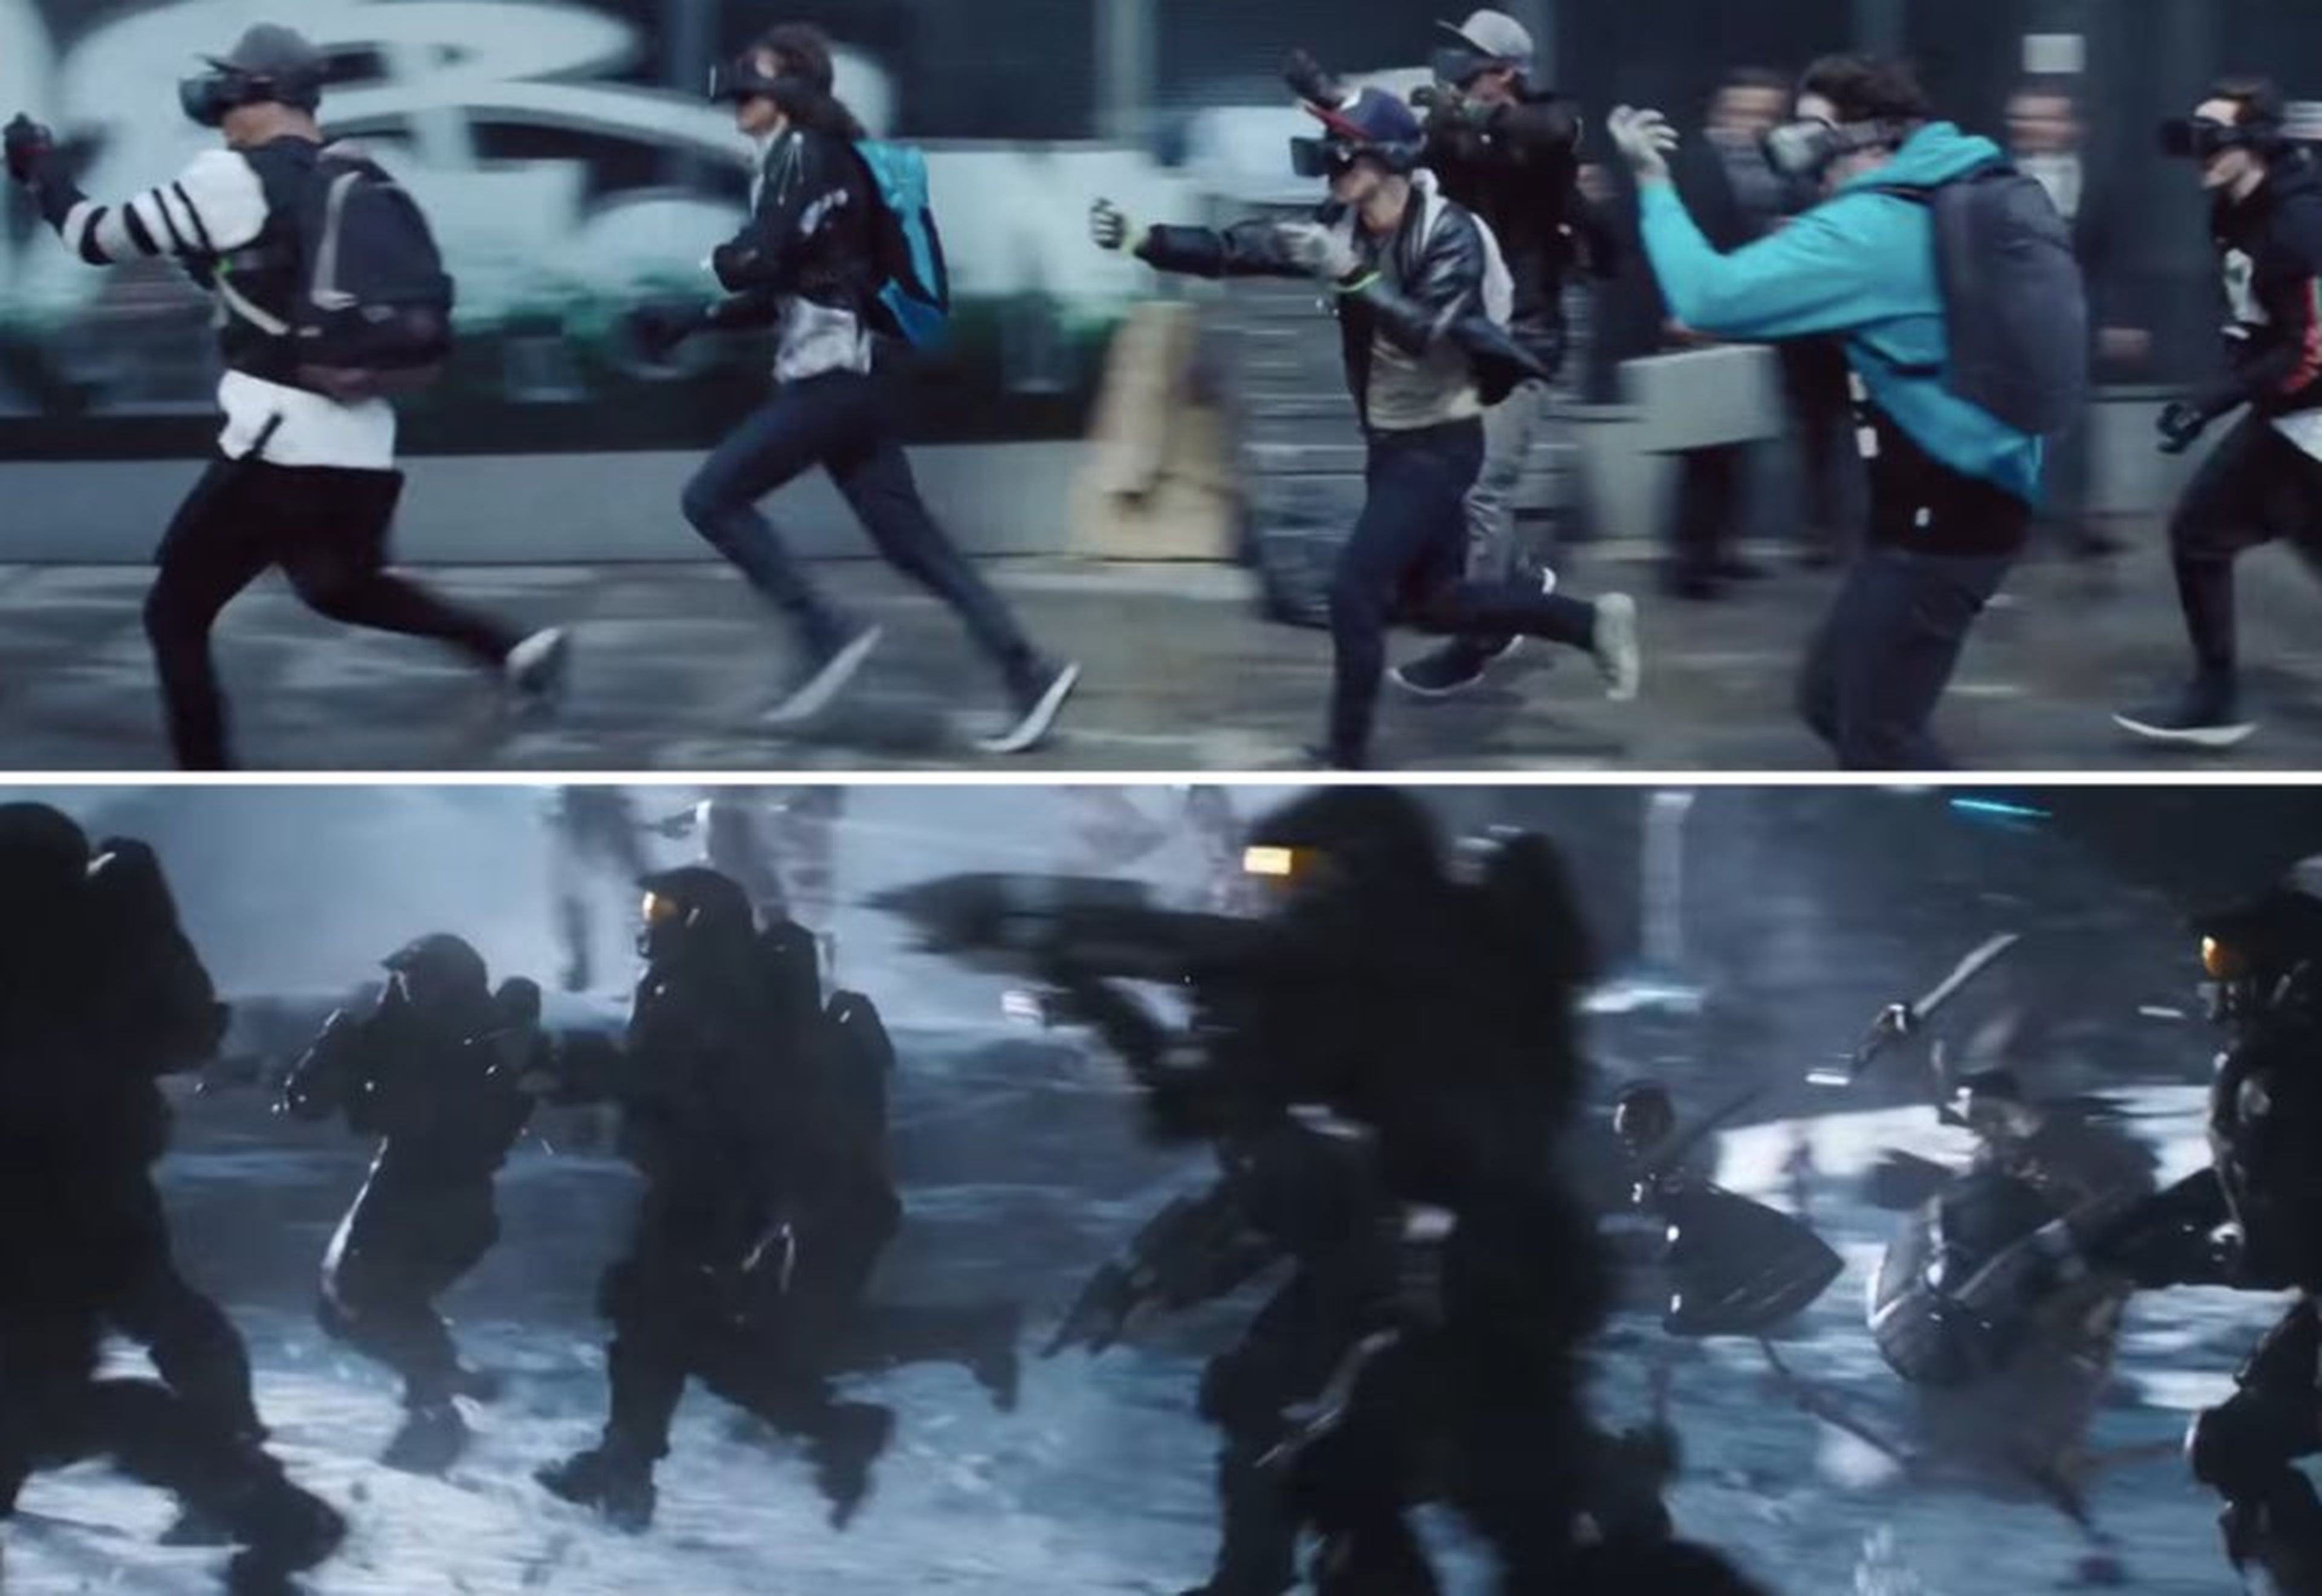 En "Ready Player One", los jugadores con dispositivos de VR corren por las calles con los controles en la mano, pero en el Oasis parecen personajes del juego "Halo" en batalla.